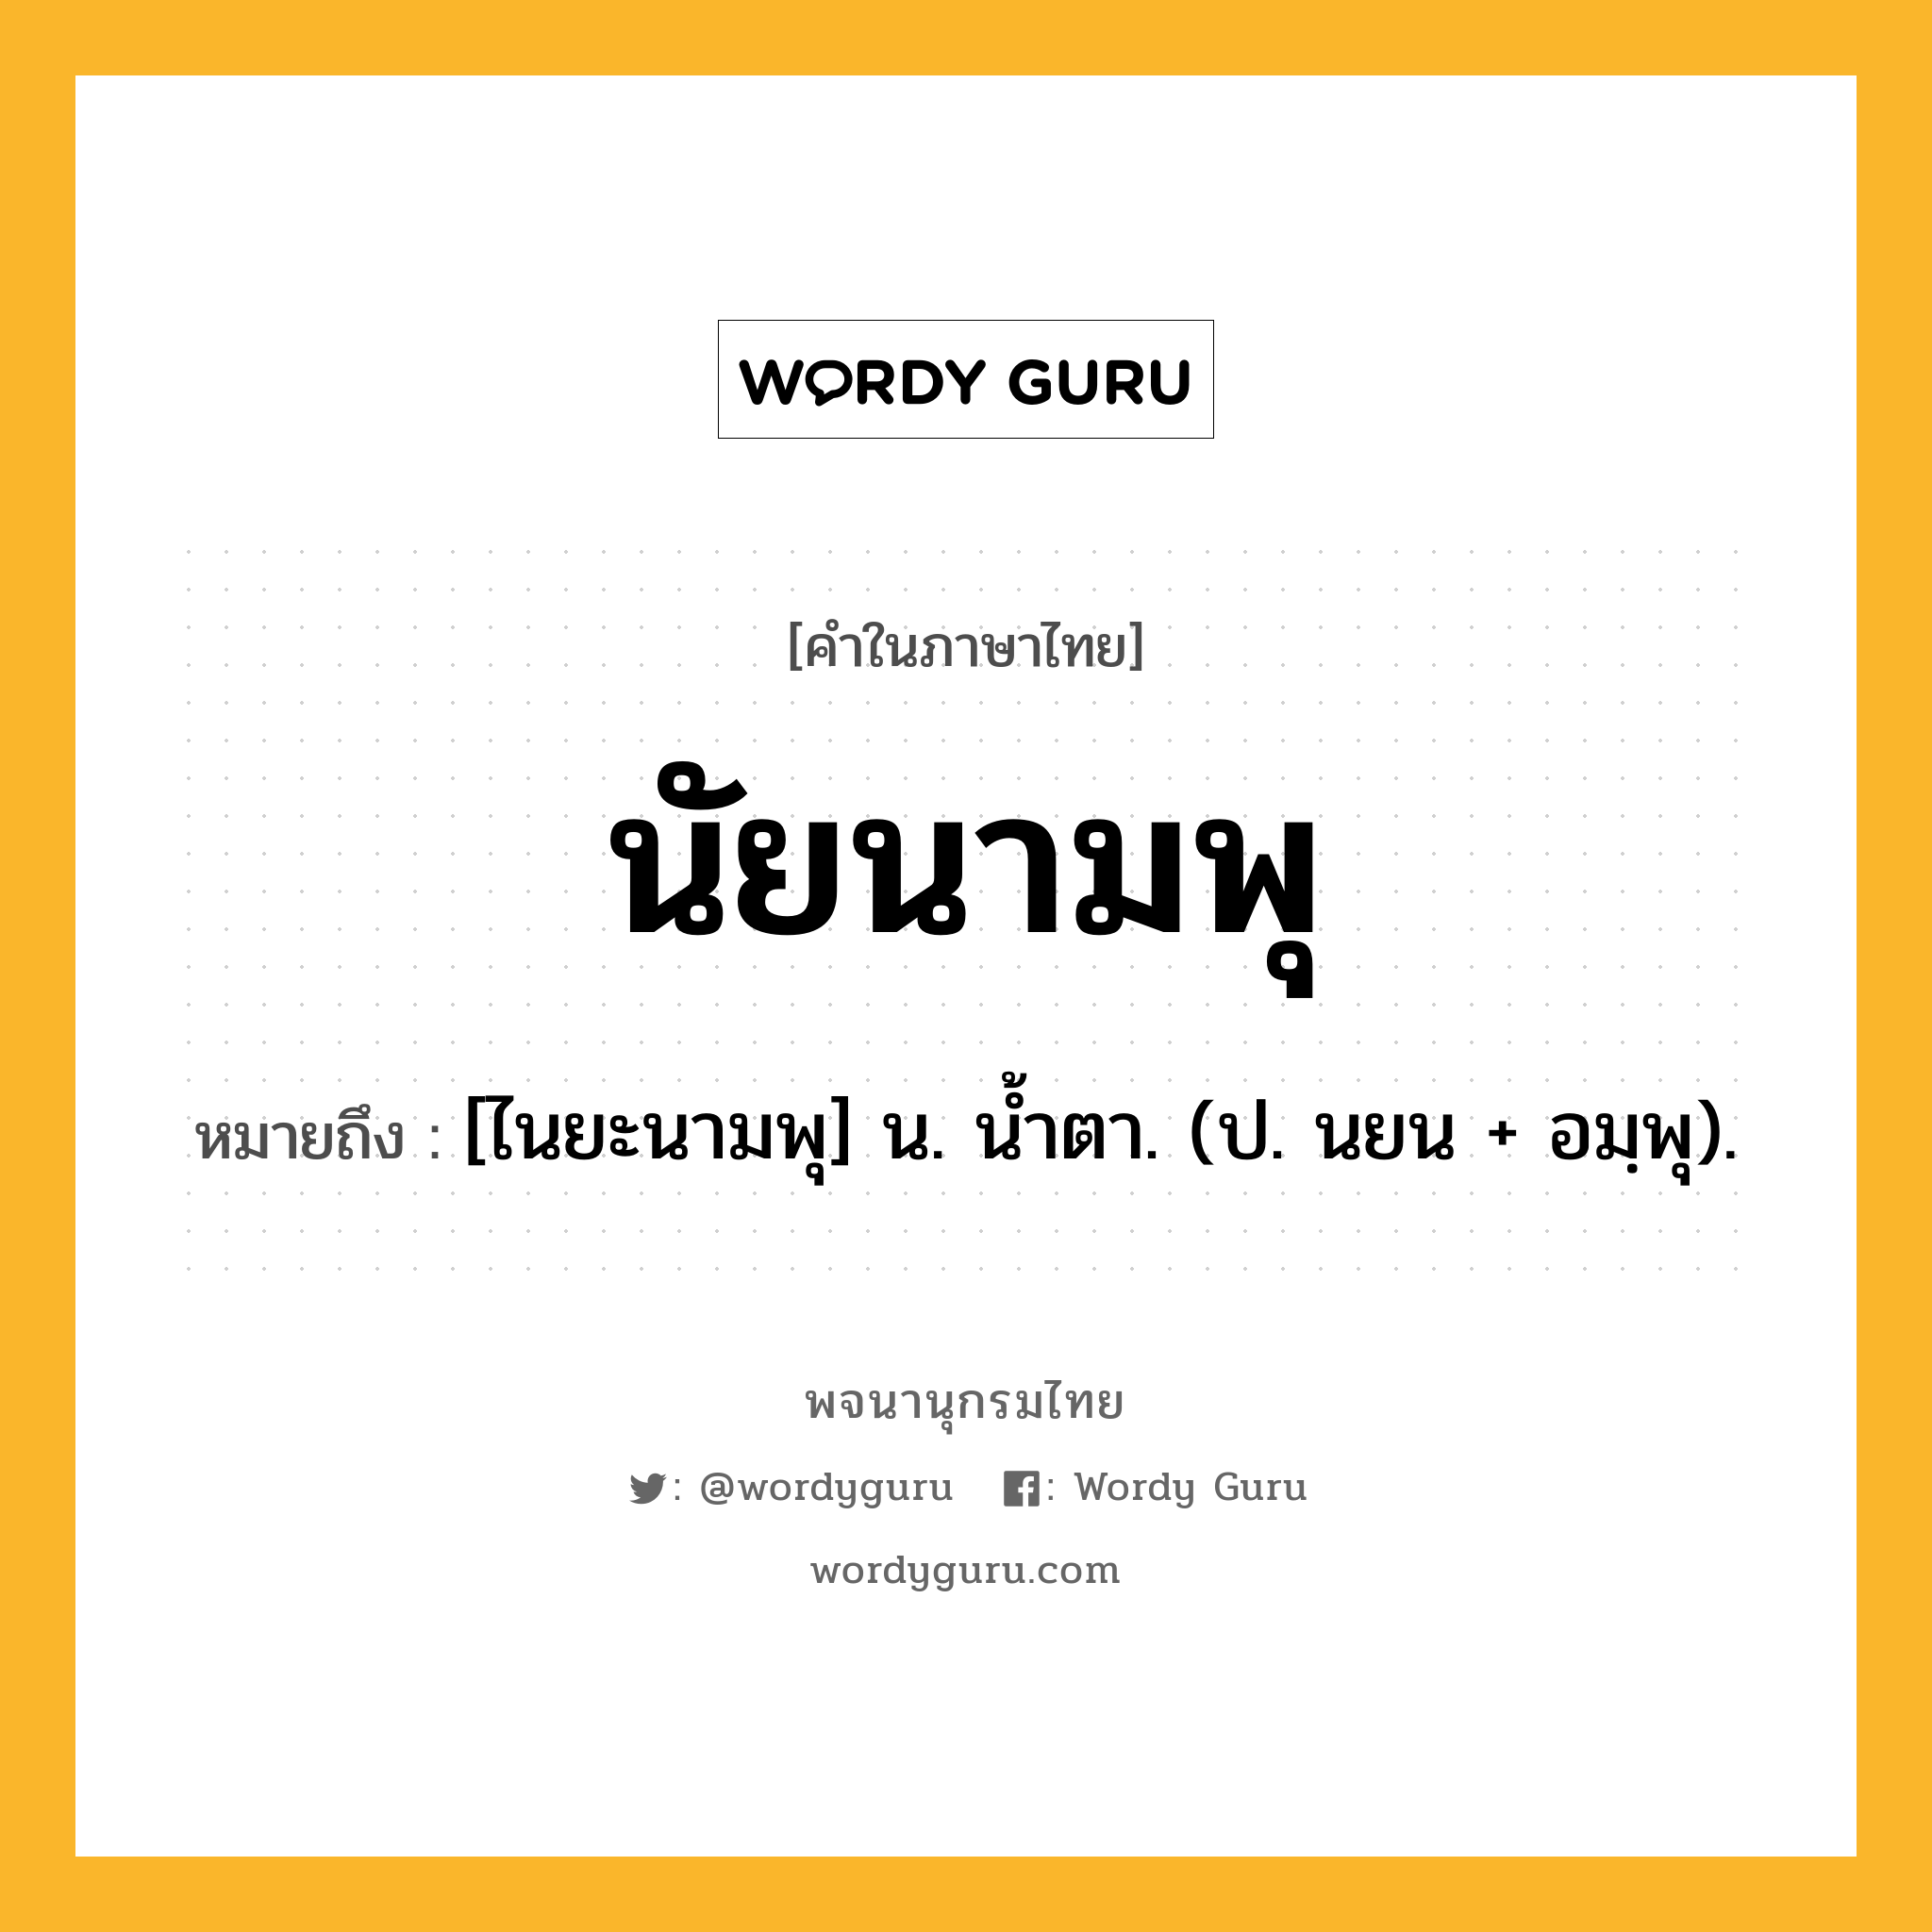 นัยนามพุ หมายถึงอะไร?, คำในภาษาไทย นัยนามพุ หมายถึง [ไนยะนามพุ] น. นํ้าตา. (ป. นยน + อมฺพุ).